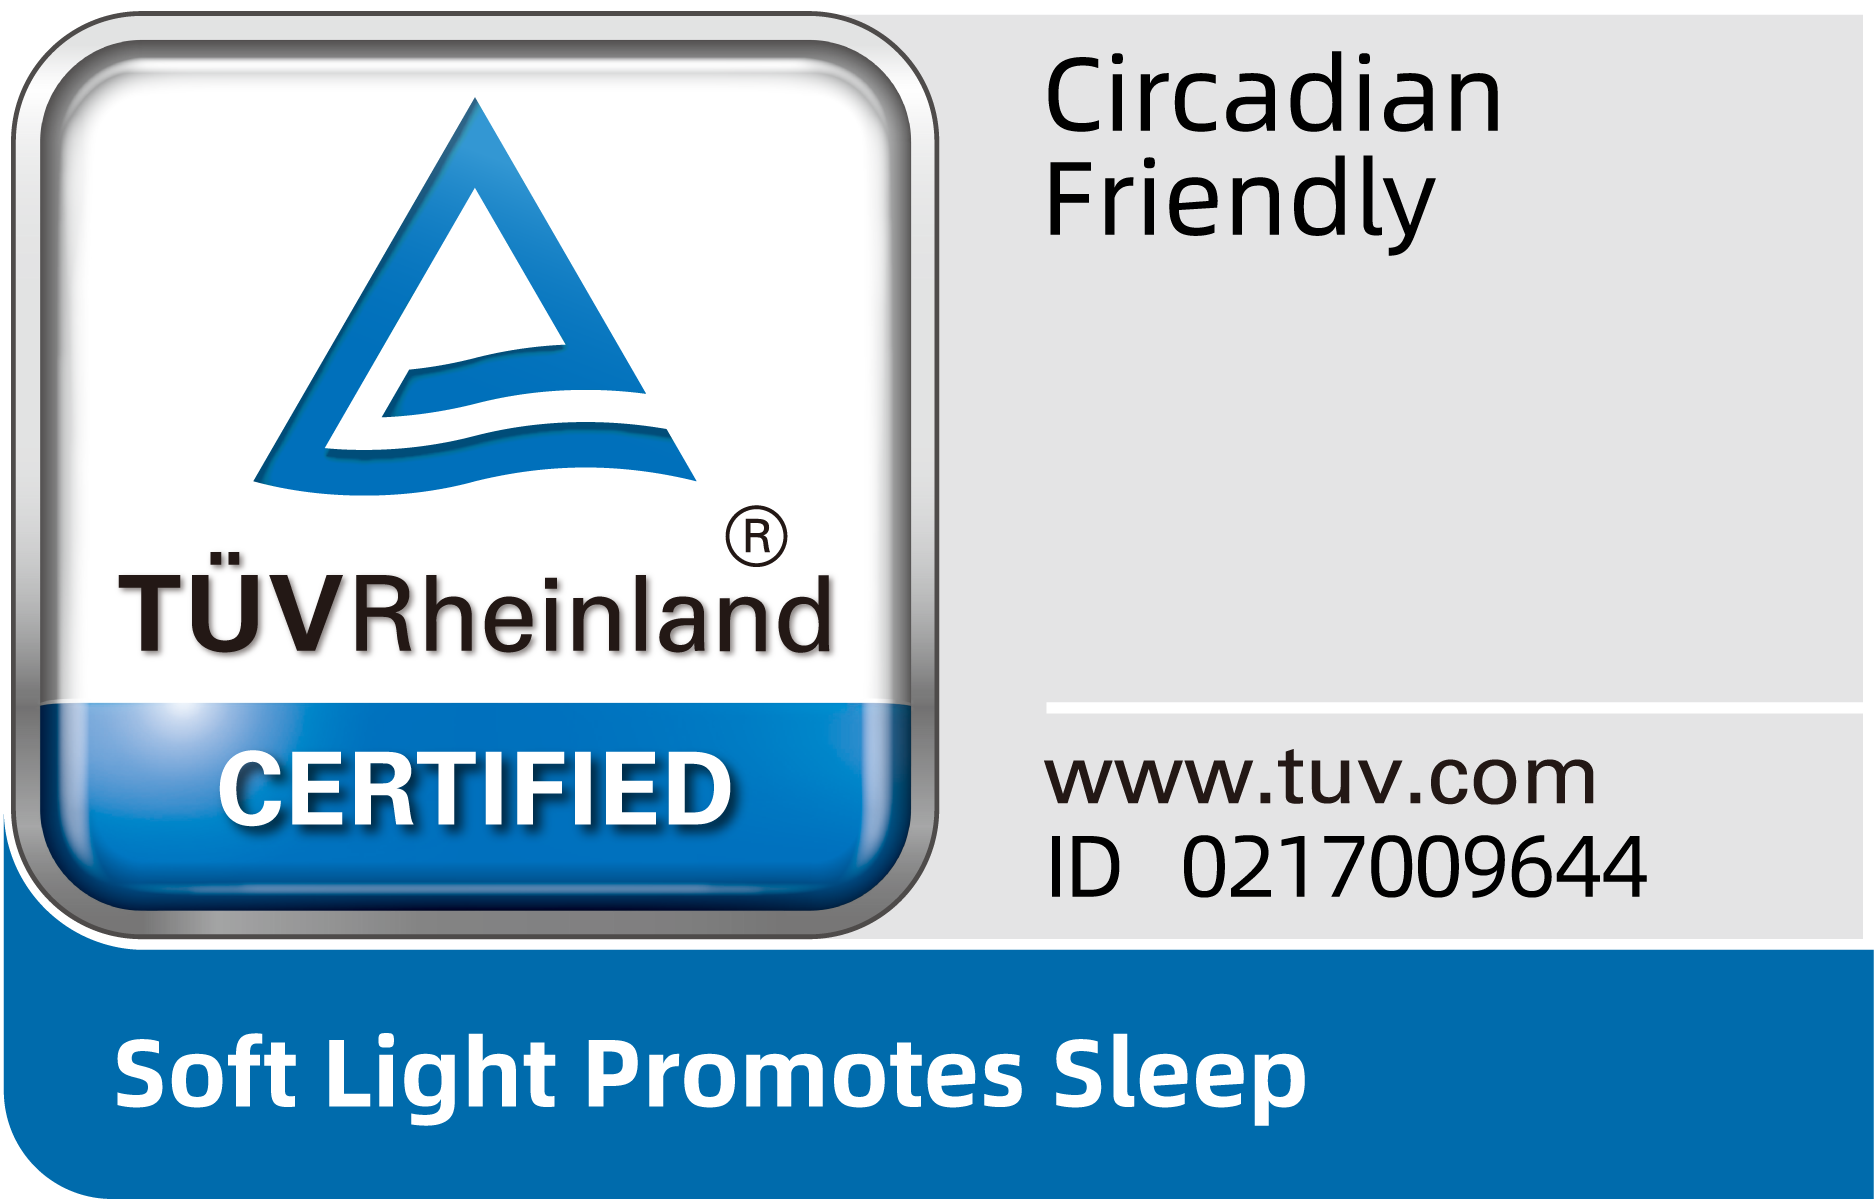 Respeto al ritmo circadiano con certificación TÜV Rheinland. 2